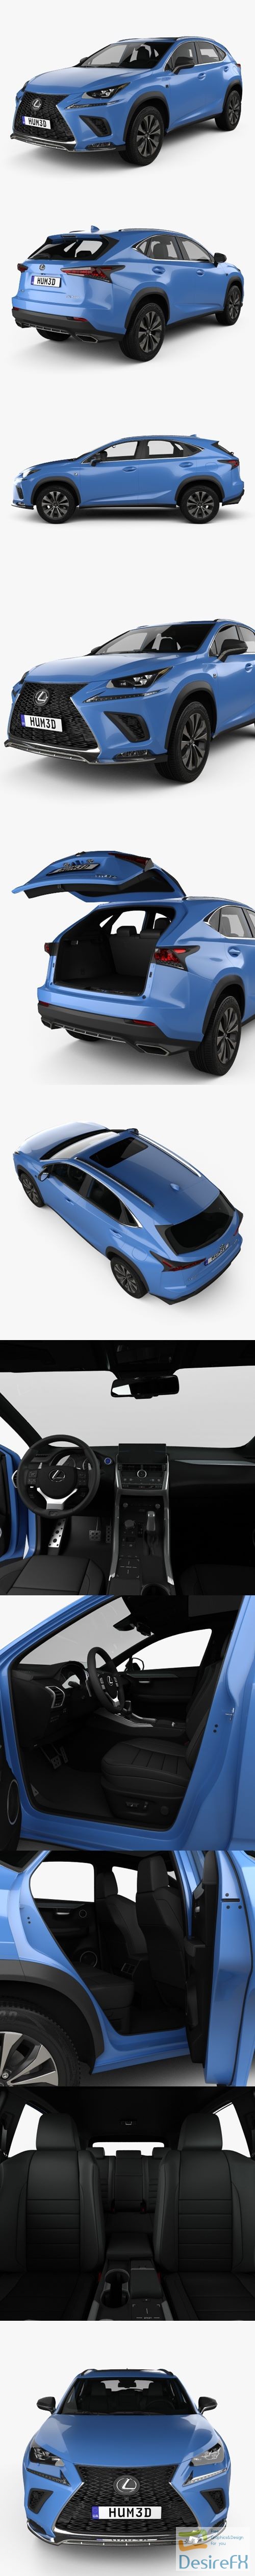 Lexus NX F-sport with HQ interior 2017 3D Model